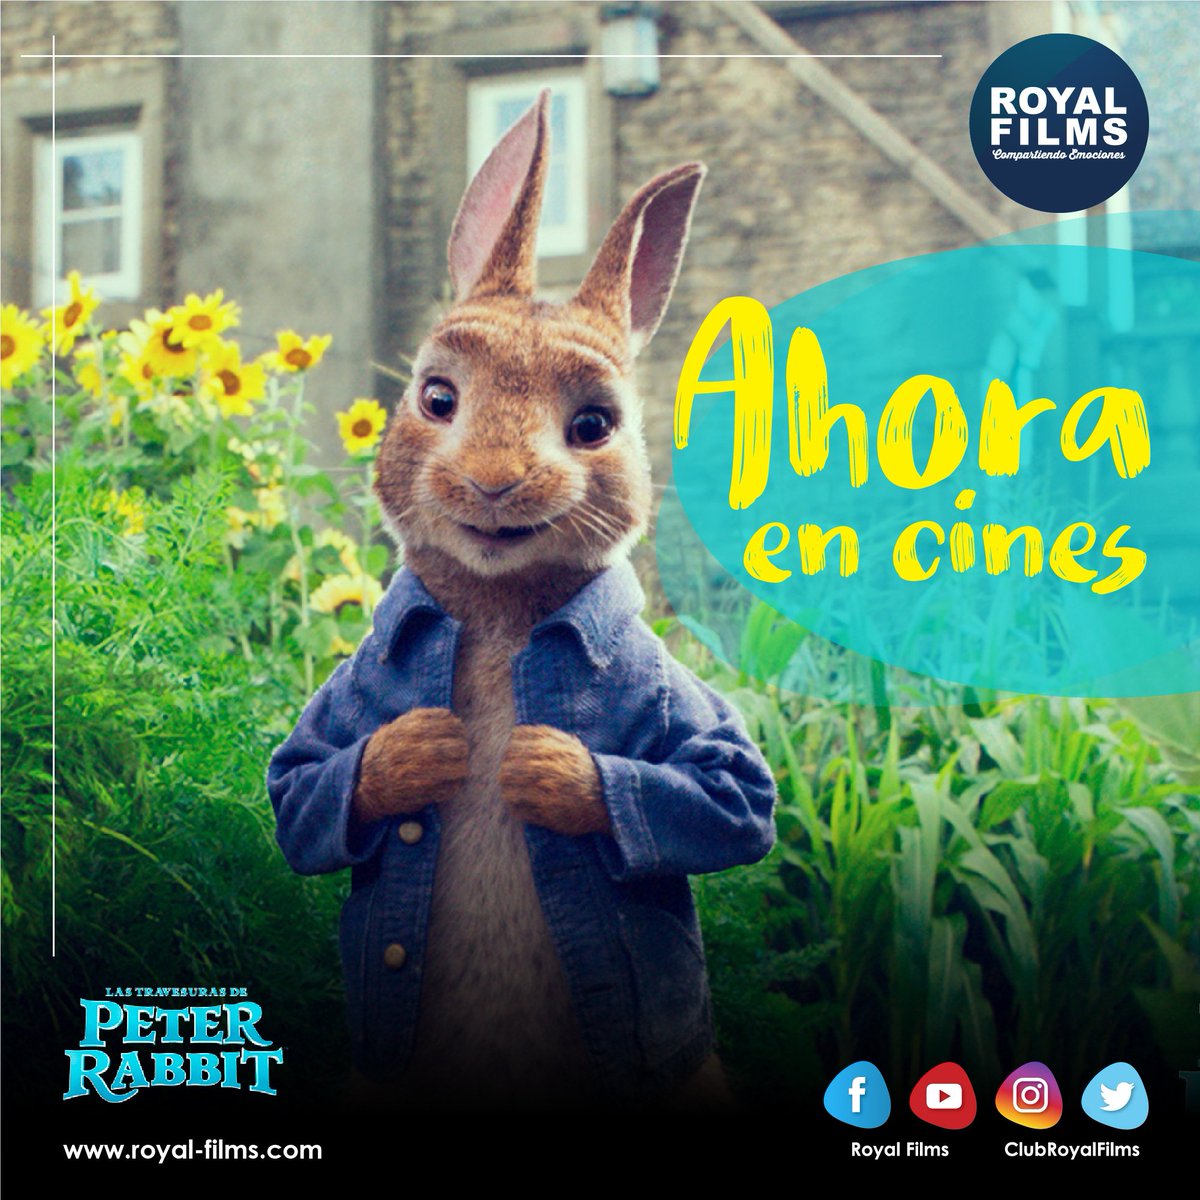 Royal Films On Twitter Lanzate A La Accion Con El Conejo